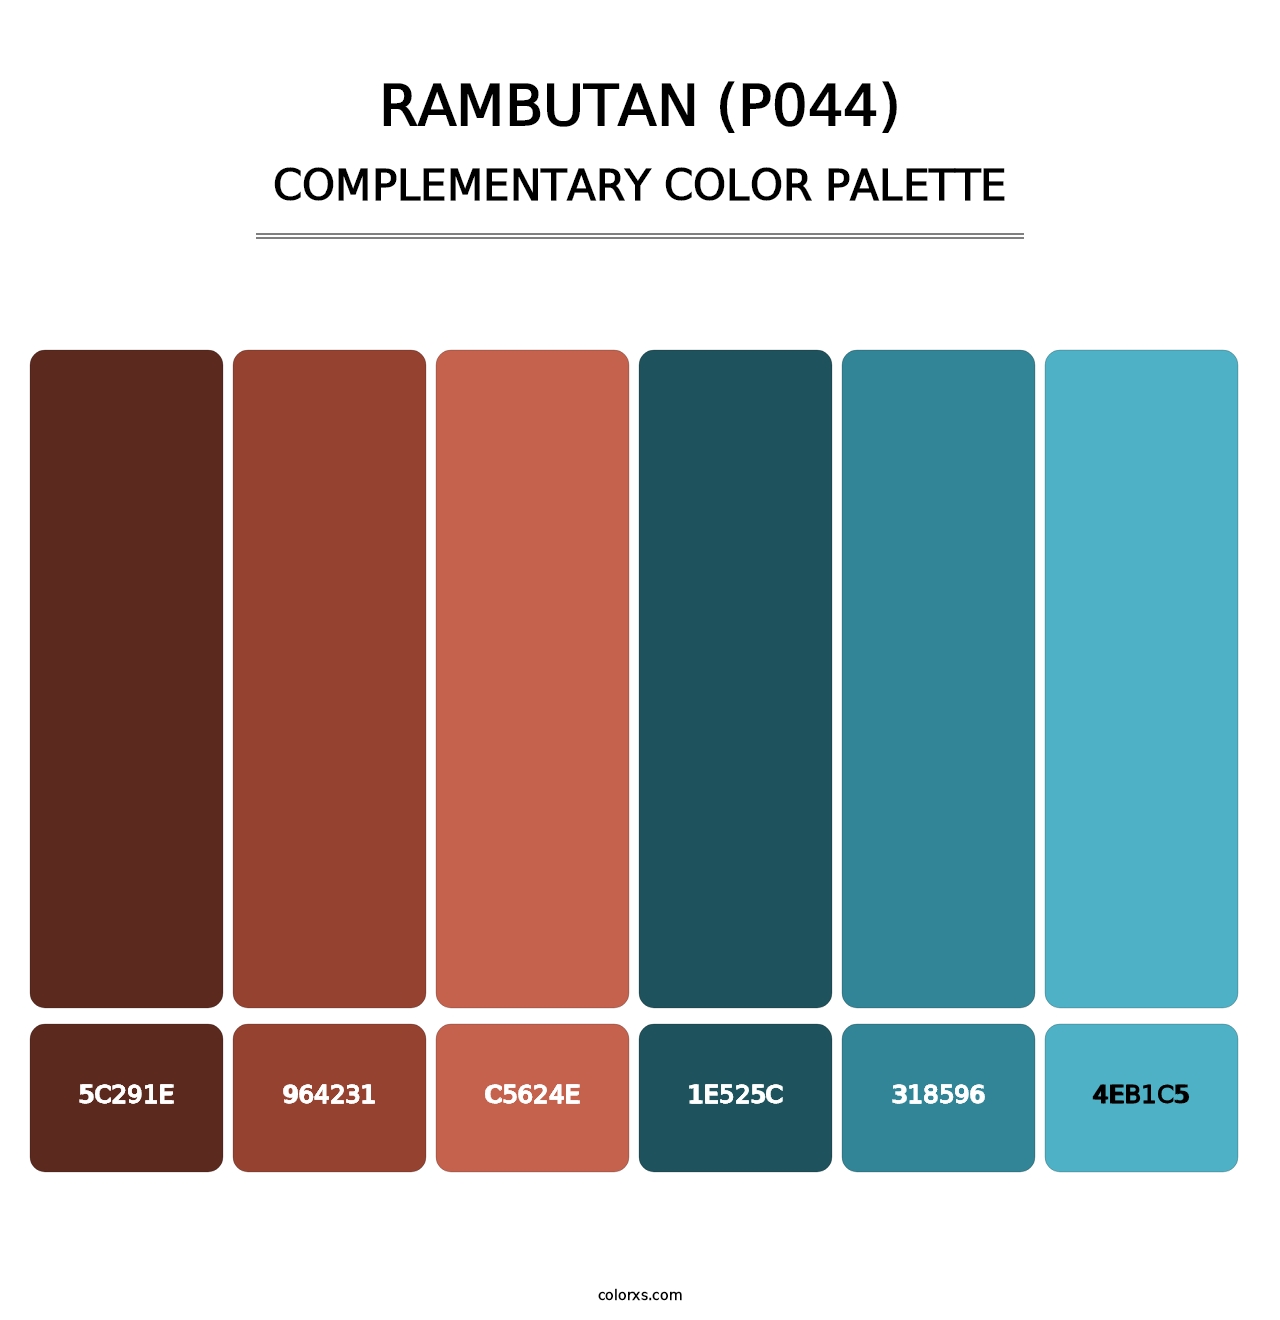 Rambutan (P044) - Complementary Color Palette